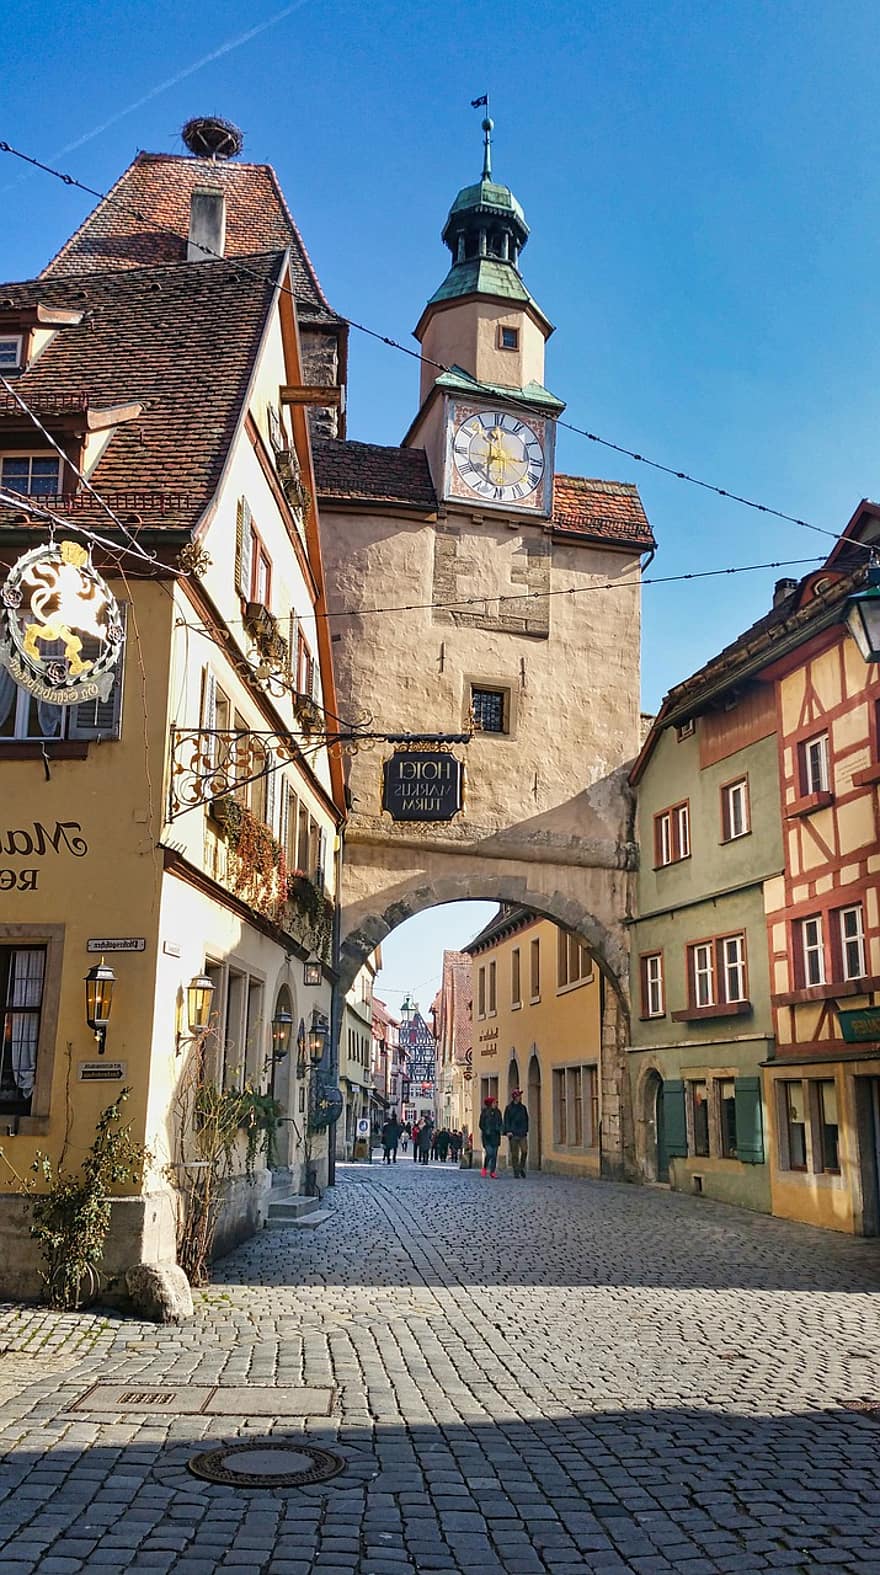 rothenburg ob der tauber, kaupungin portti, katu, rakennukset, puurakenteiset talot, kaari, vanha kaupunki, kello, torni, arkkitehtuuri, historiallinen